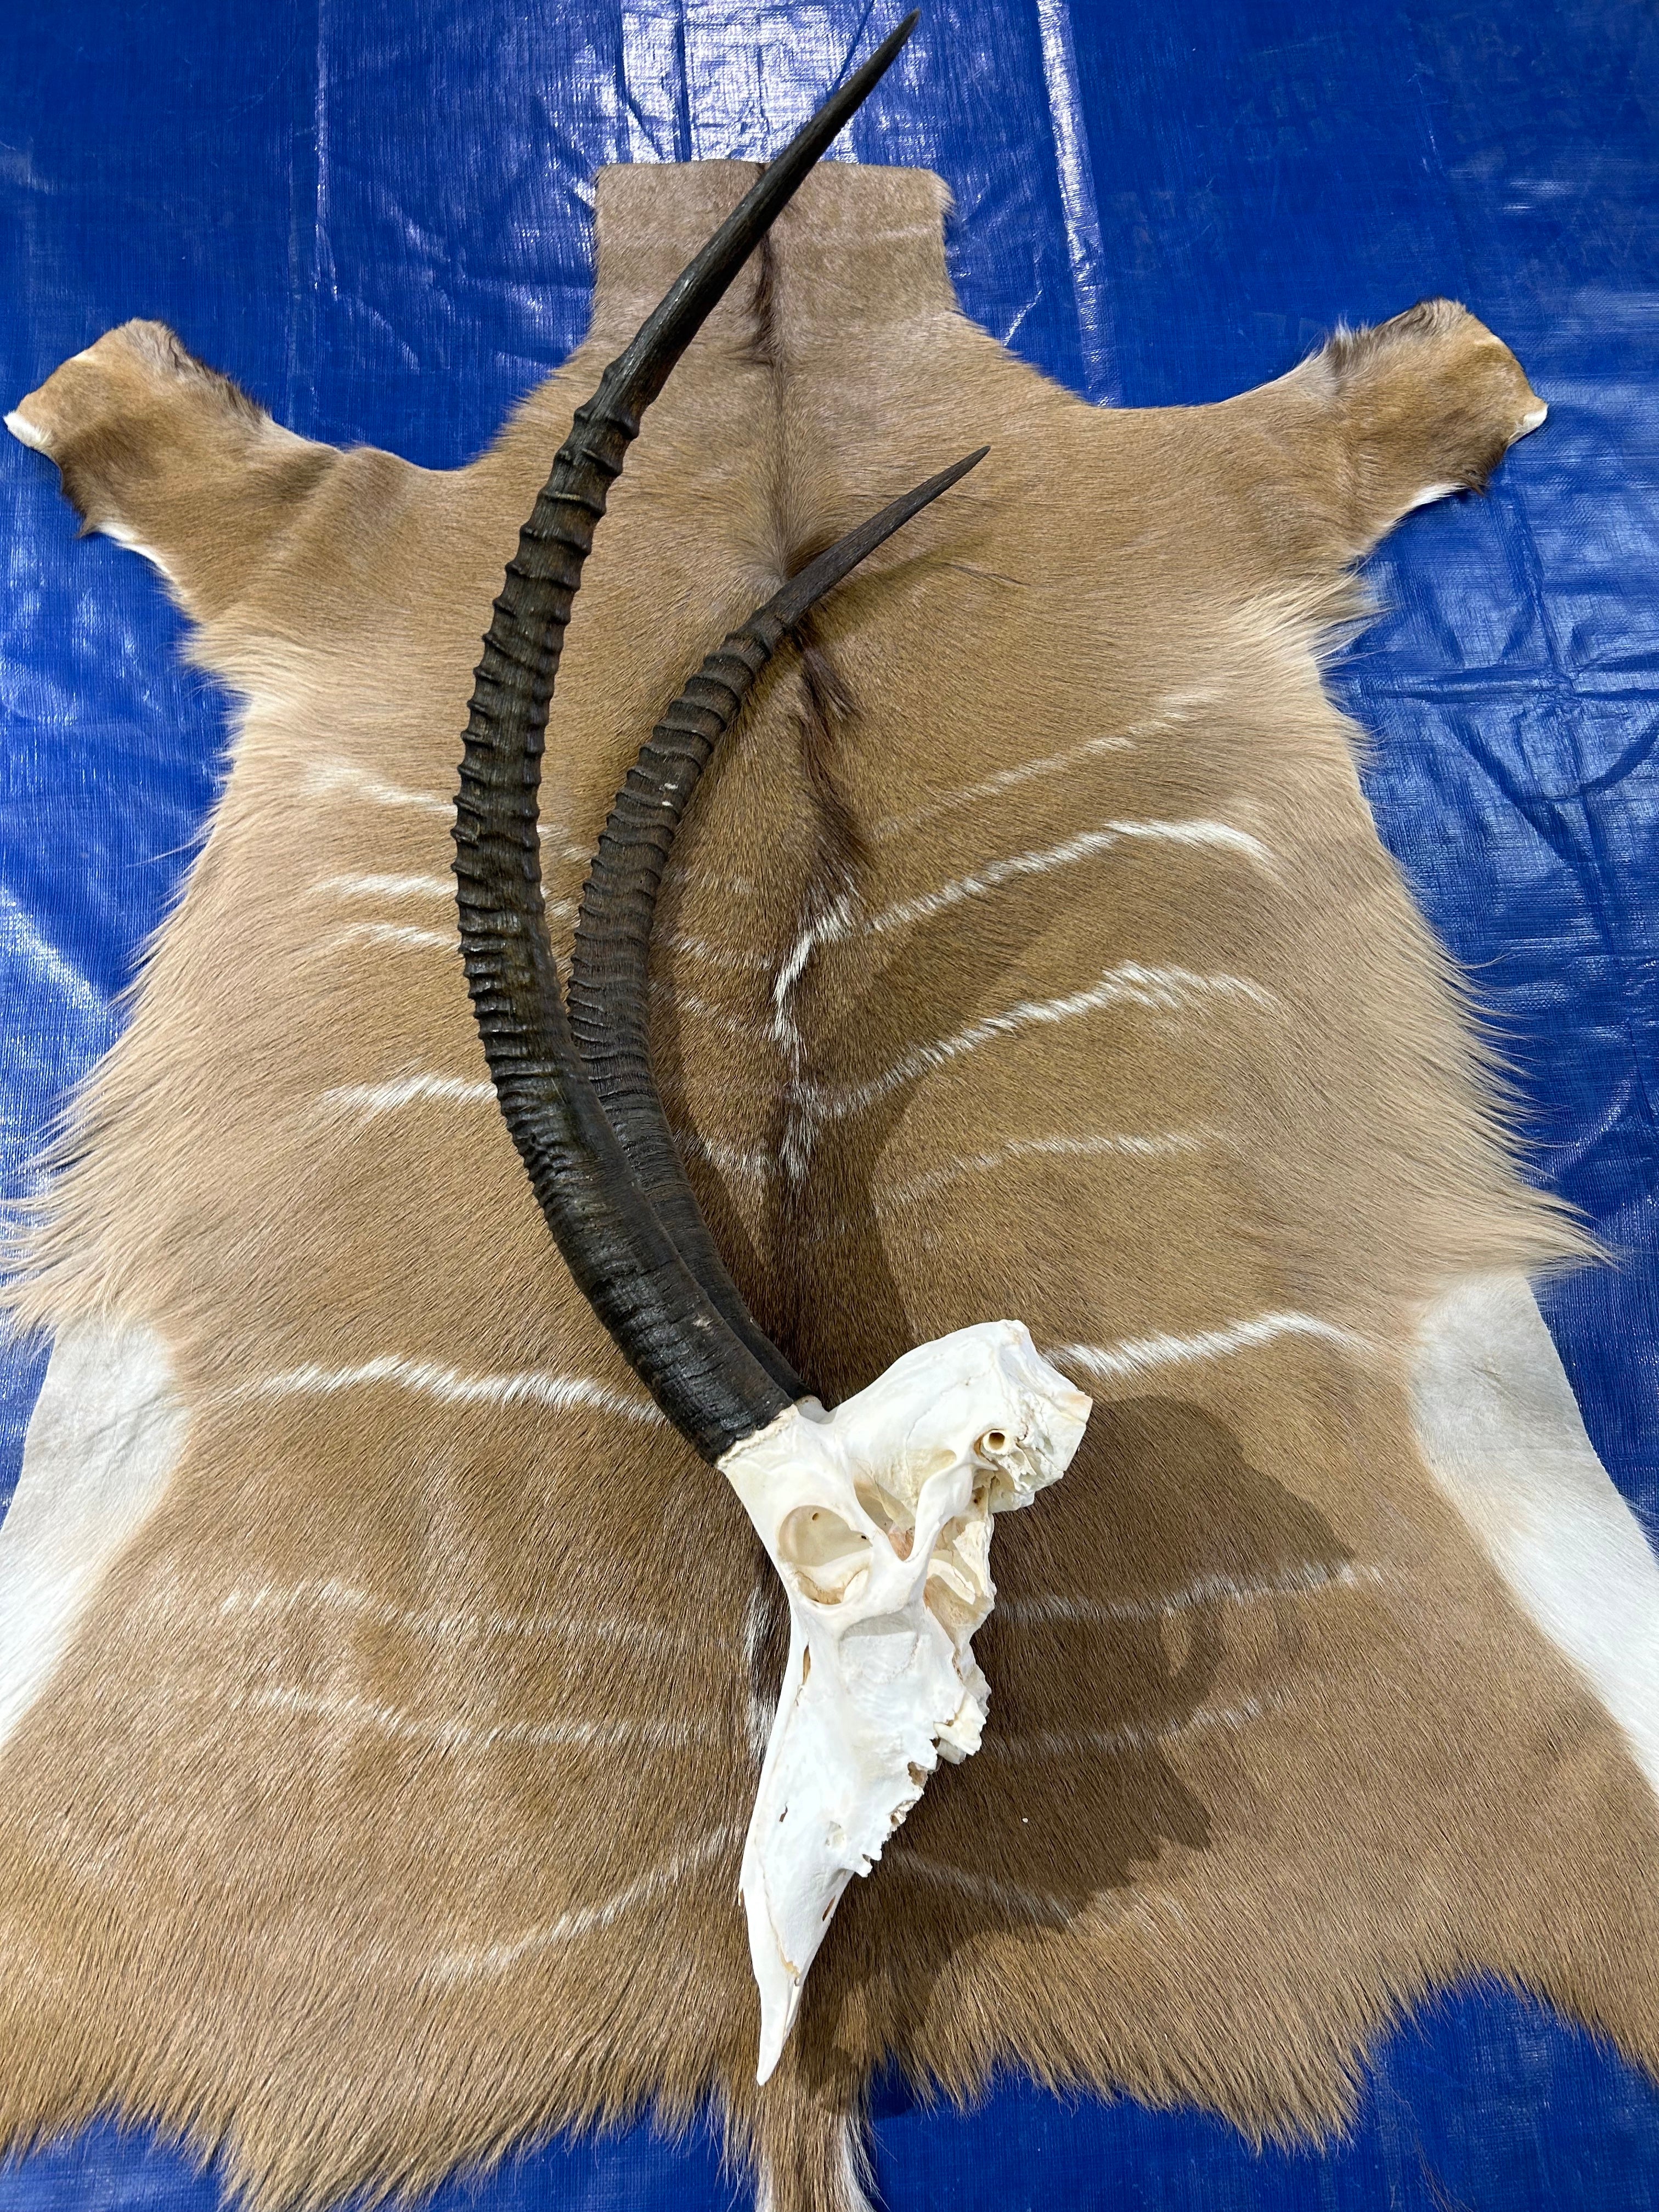 Giant Sable Skull 32 1/2"- Deer Skull - Real African Antelope Horns - African Sable Trophy Antelope Skull